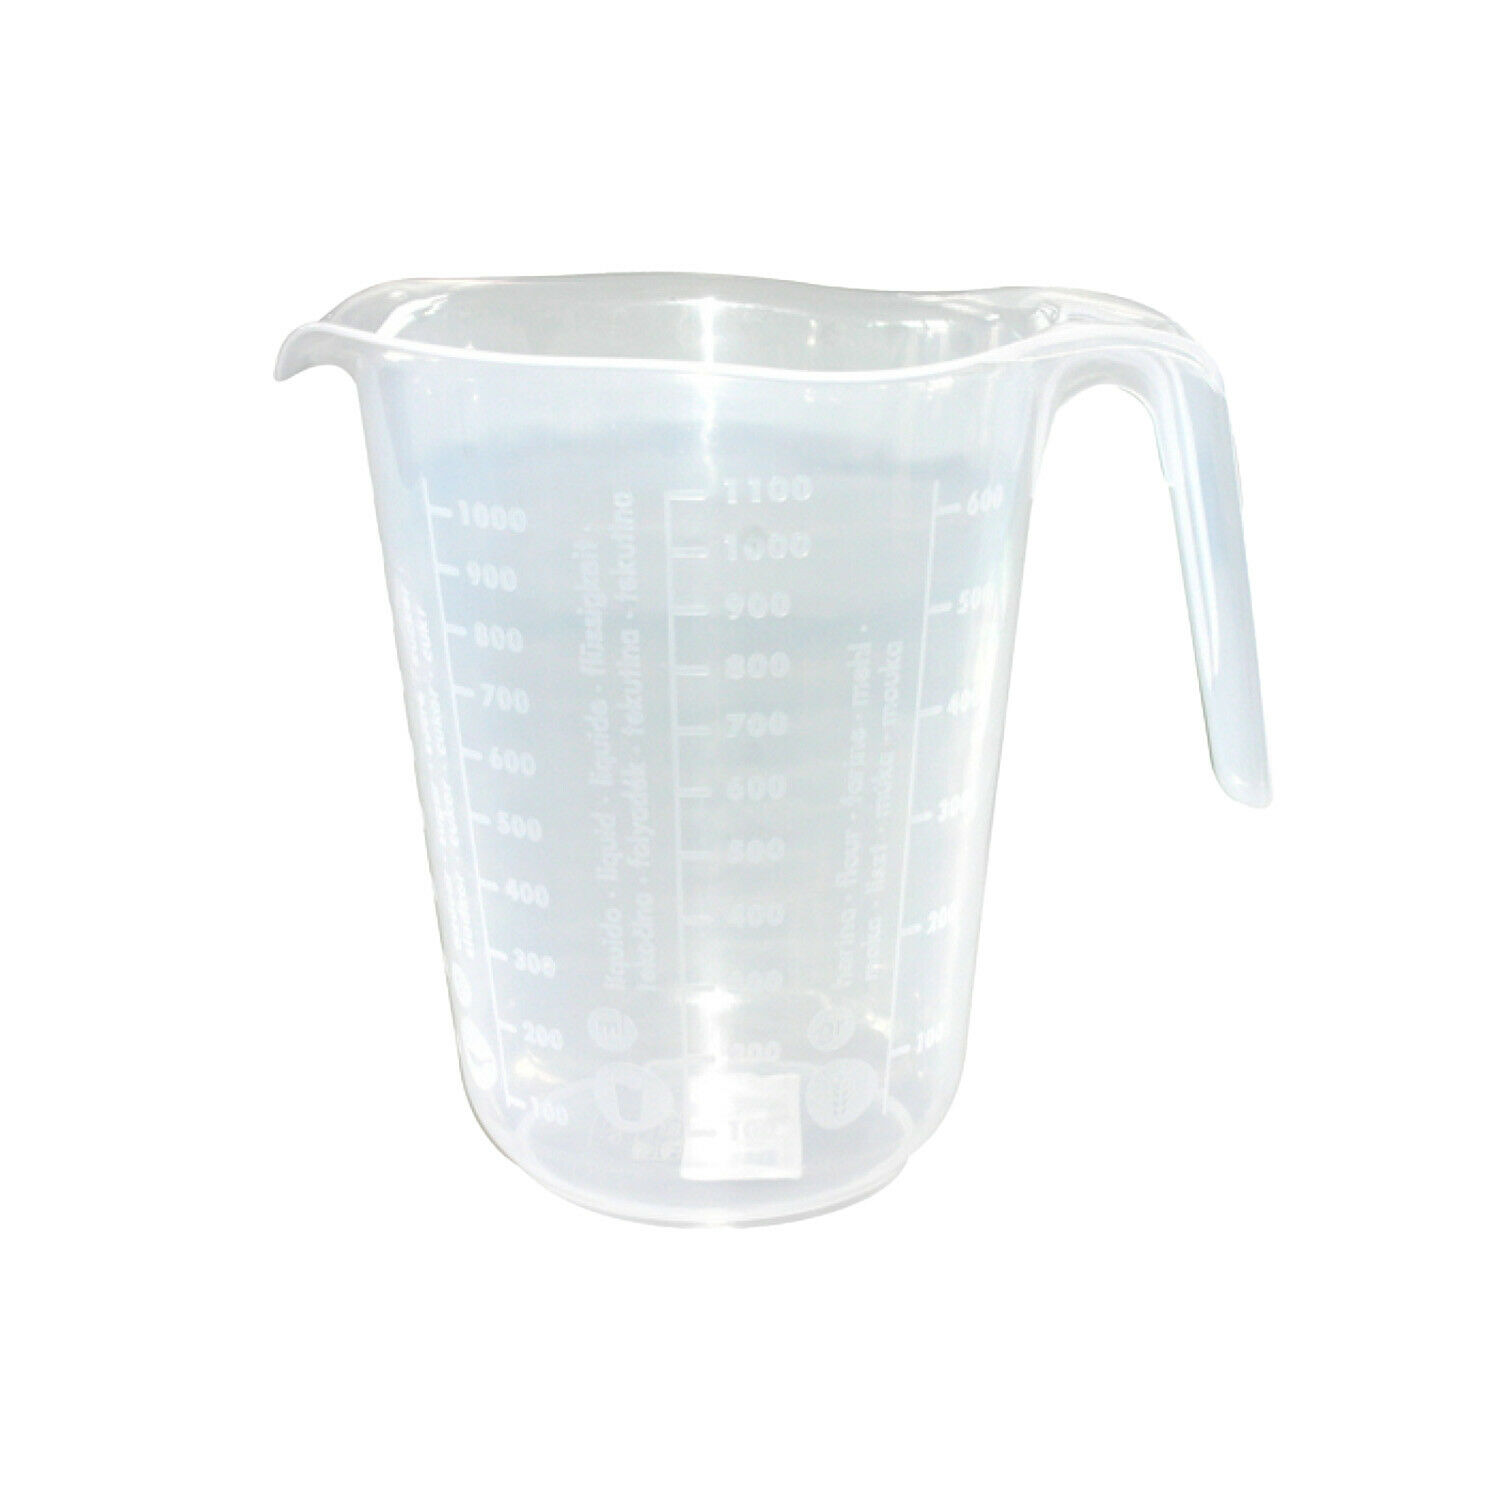 Messbecher 1l Messkanne Kunststoff Transparent Verschiedene Messskalen Mehl Zucker Wasser Spülmaschinenfest Bambelaa